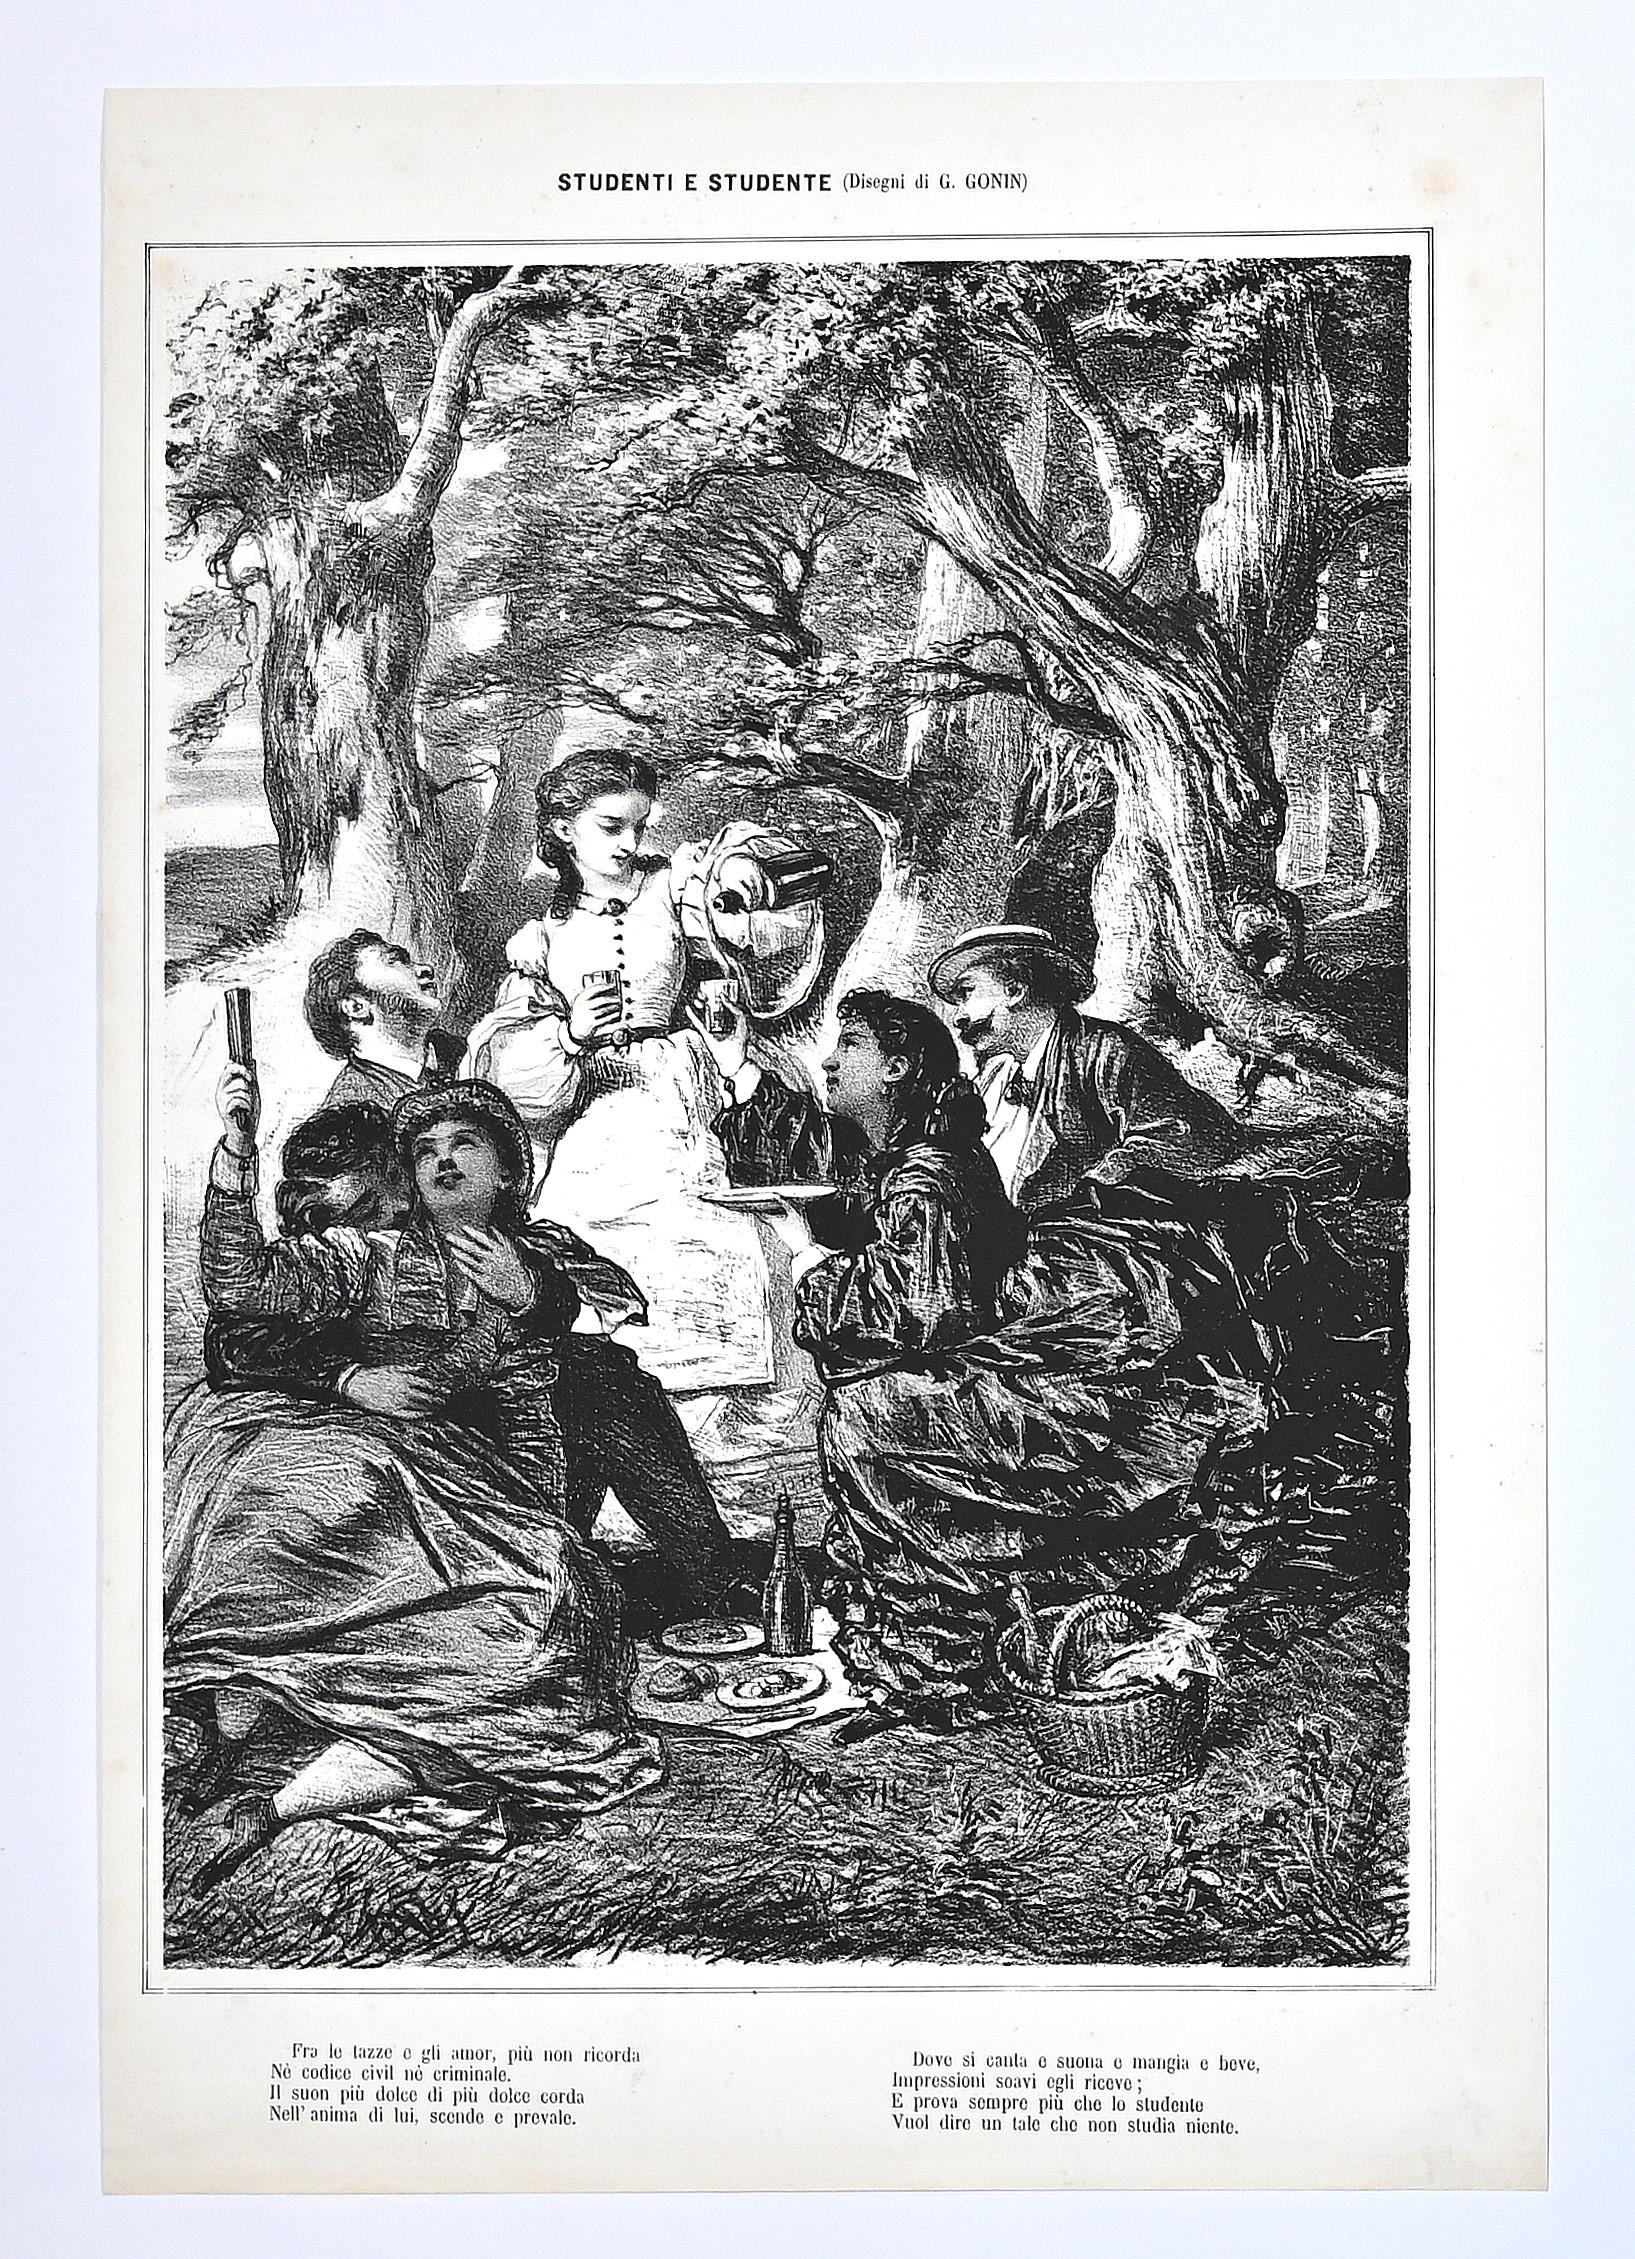 Gathering ist eine Lithographie von Guido Gonin aus dem 19. Jahrhundert.

Gute Bedingungen.

Das Kunstwerk wird durch weiche Striche in einem gut ausgewogenen Verhältnis dargestellt.